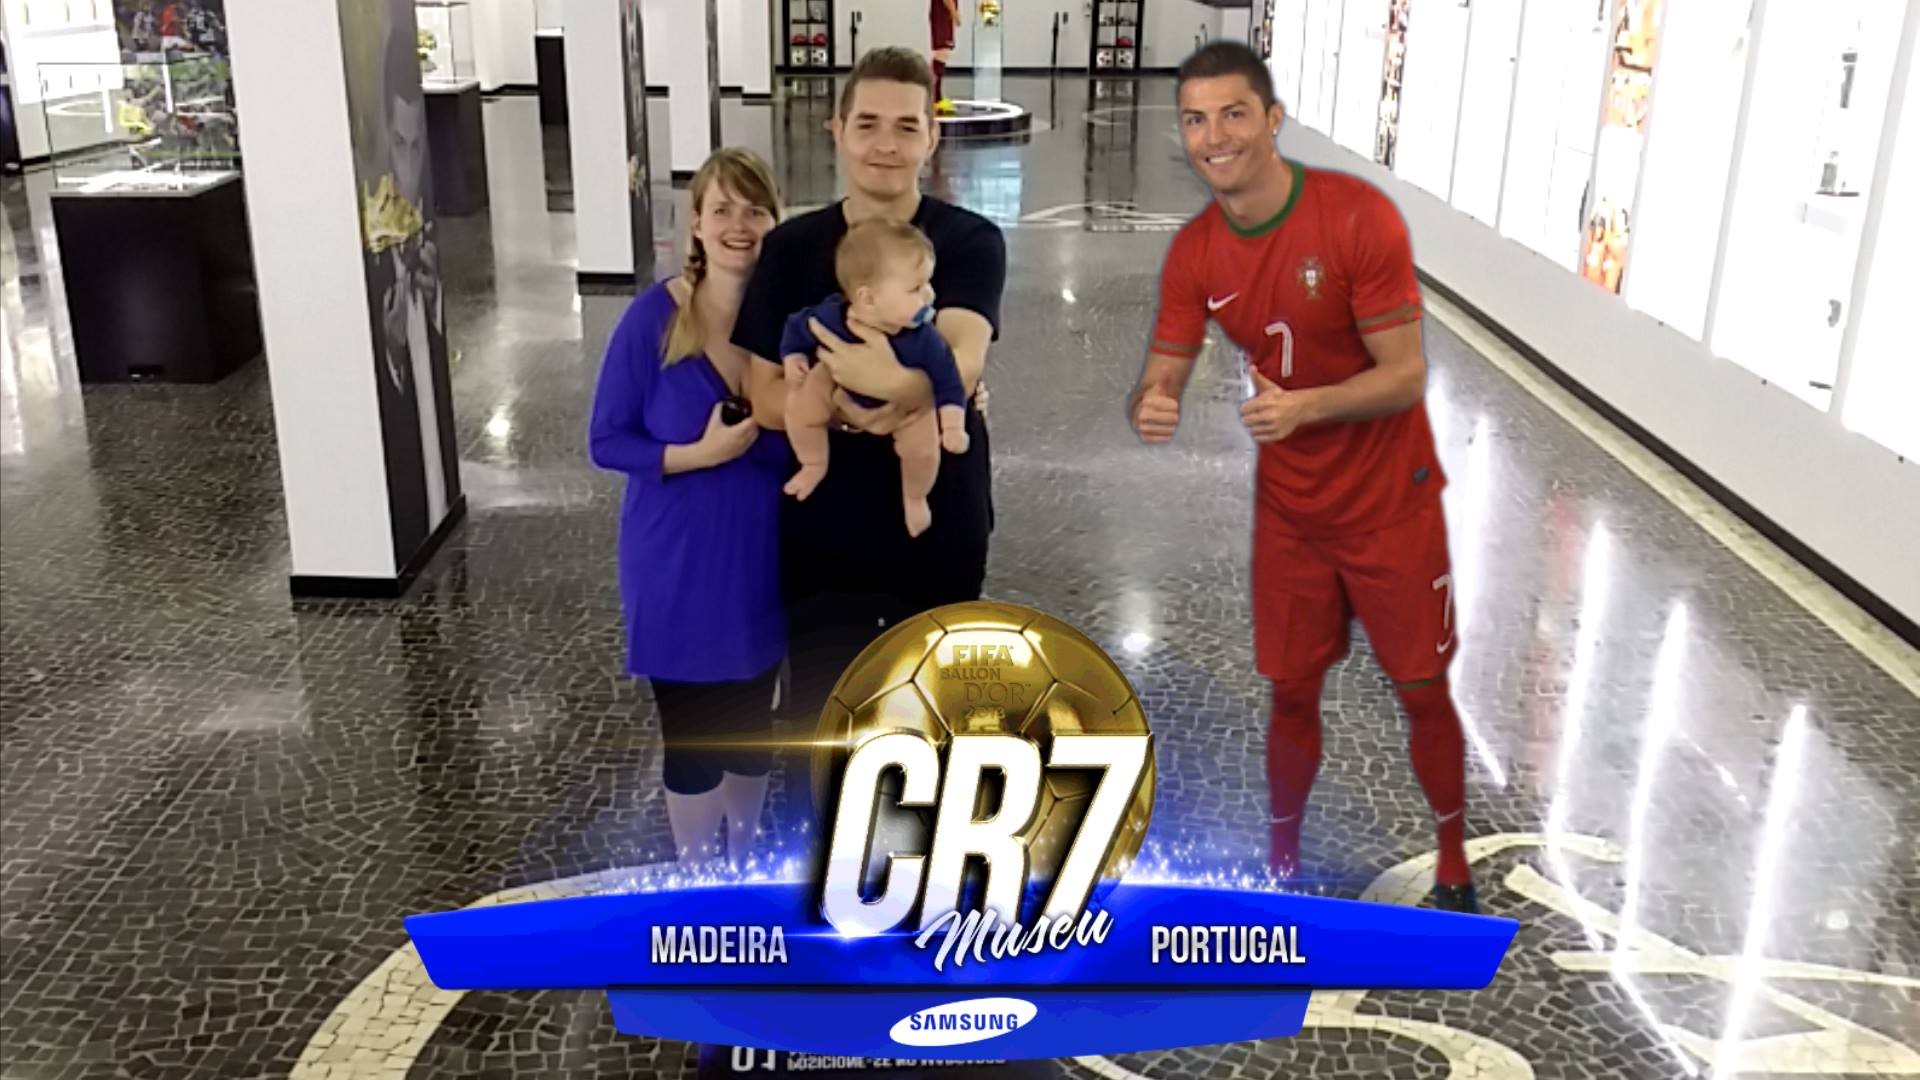 Museu Cristiano Ronaldo (Foto: Reprodução)